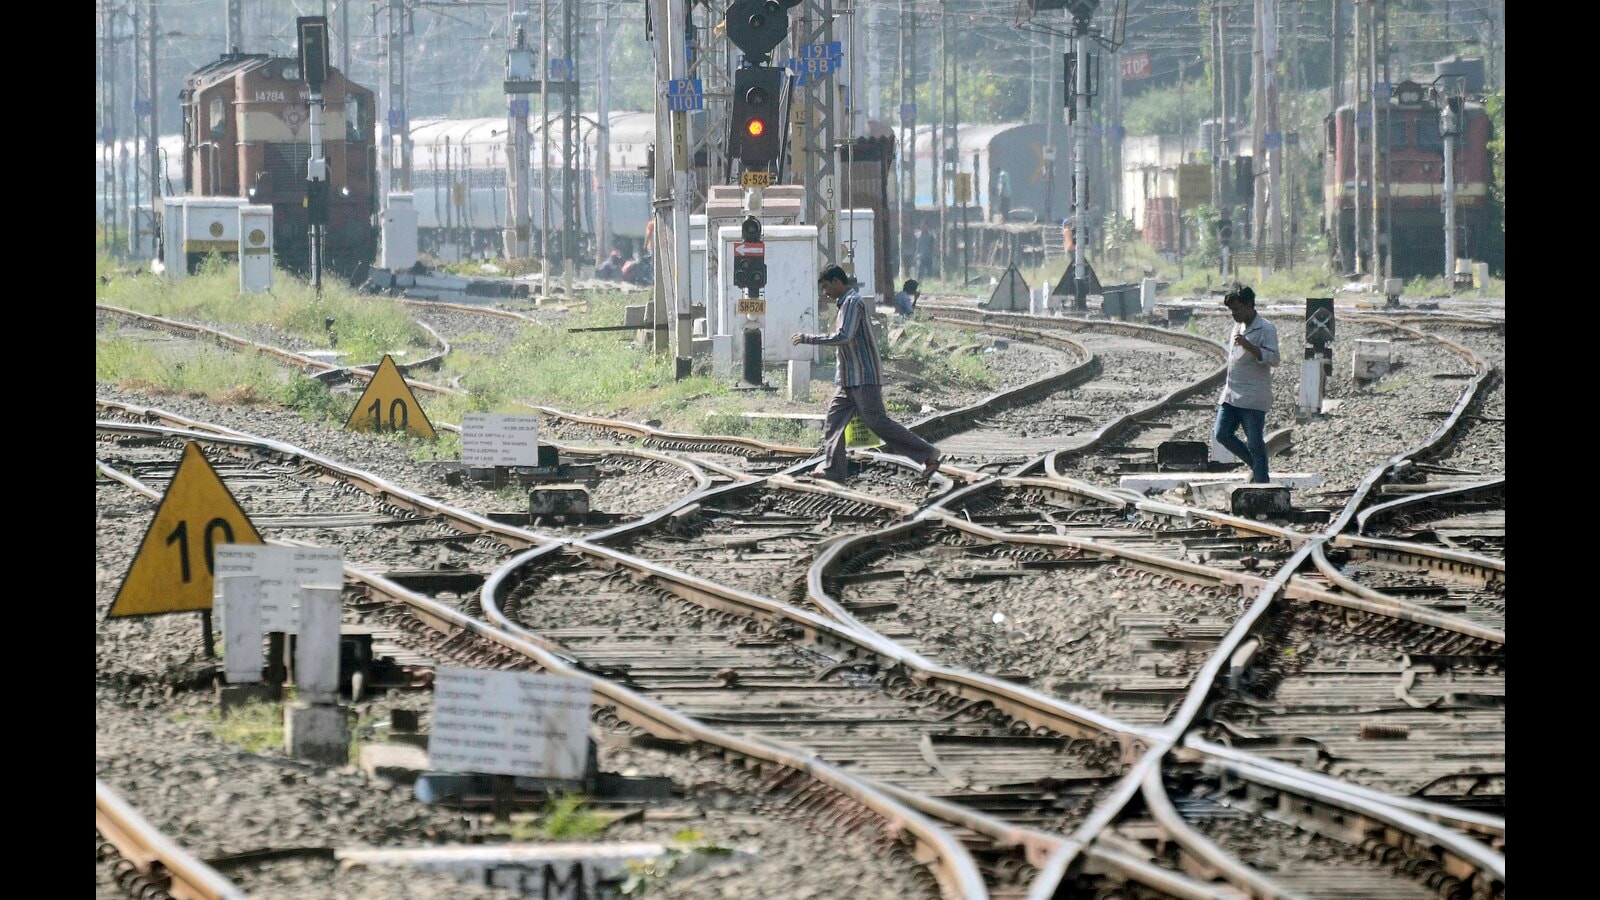 पुणे रेलवे यार्ड रीमॉडलिंग योजना में परियोजना के पूरा होने में 260 दिनों का अनुमान है